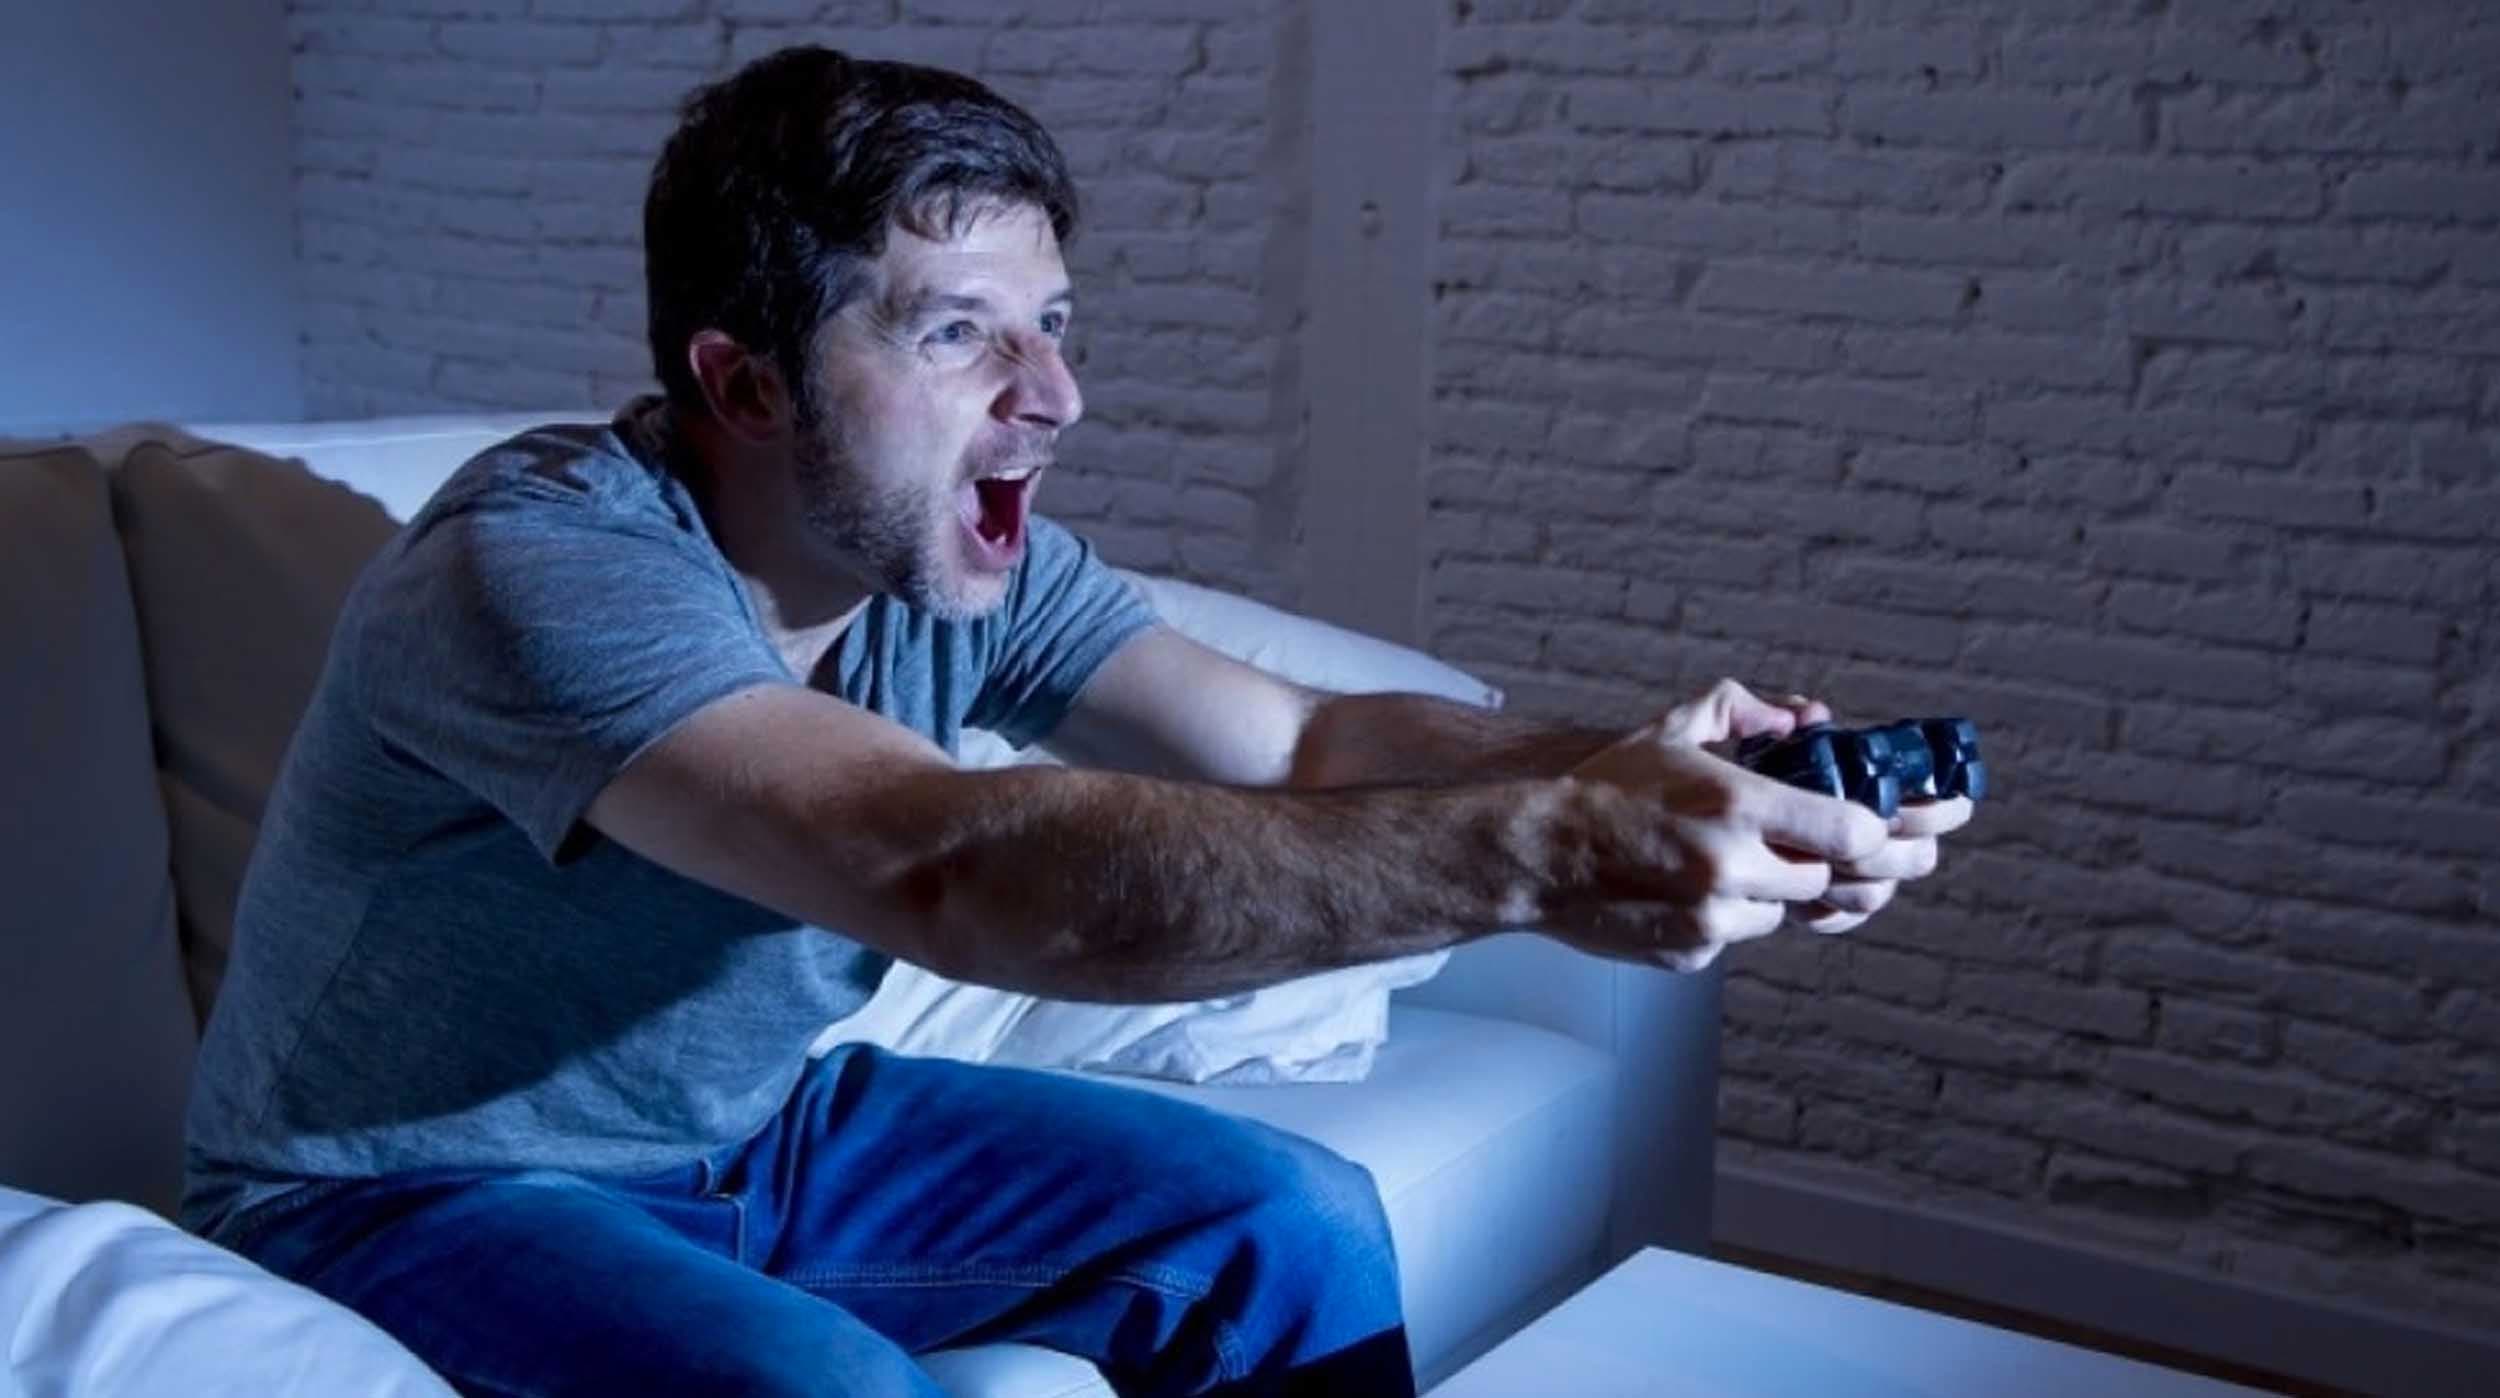 Estos 5 videojuegos pueden aumentar tus niveles de estrés, según un estudio